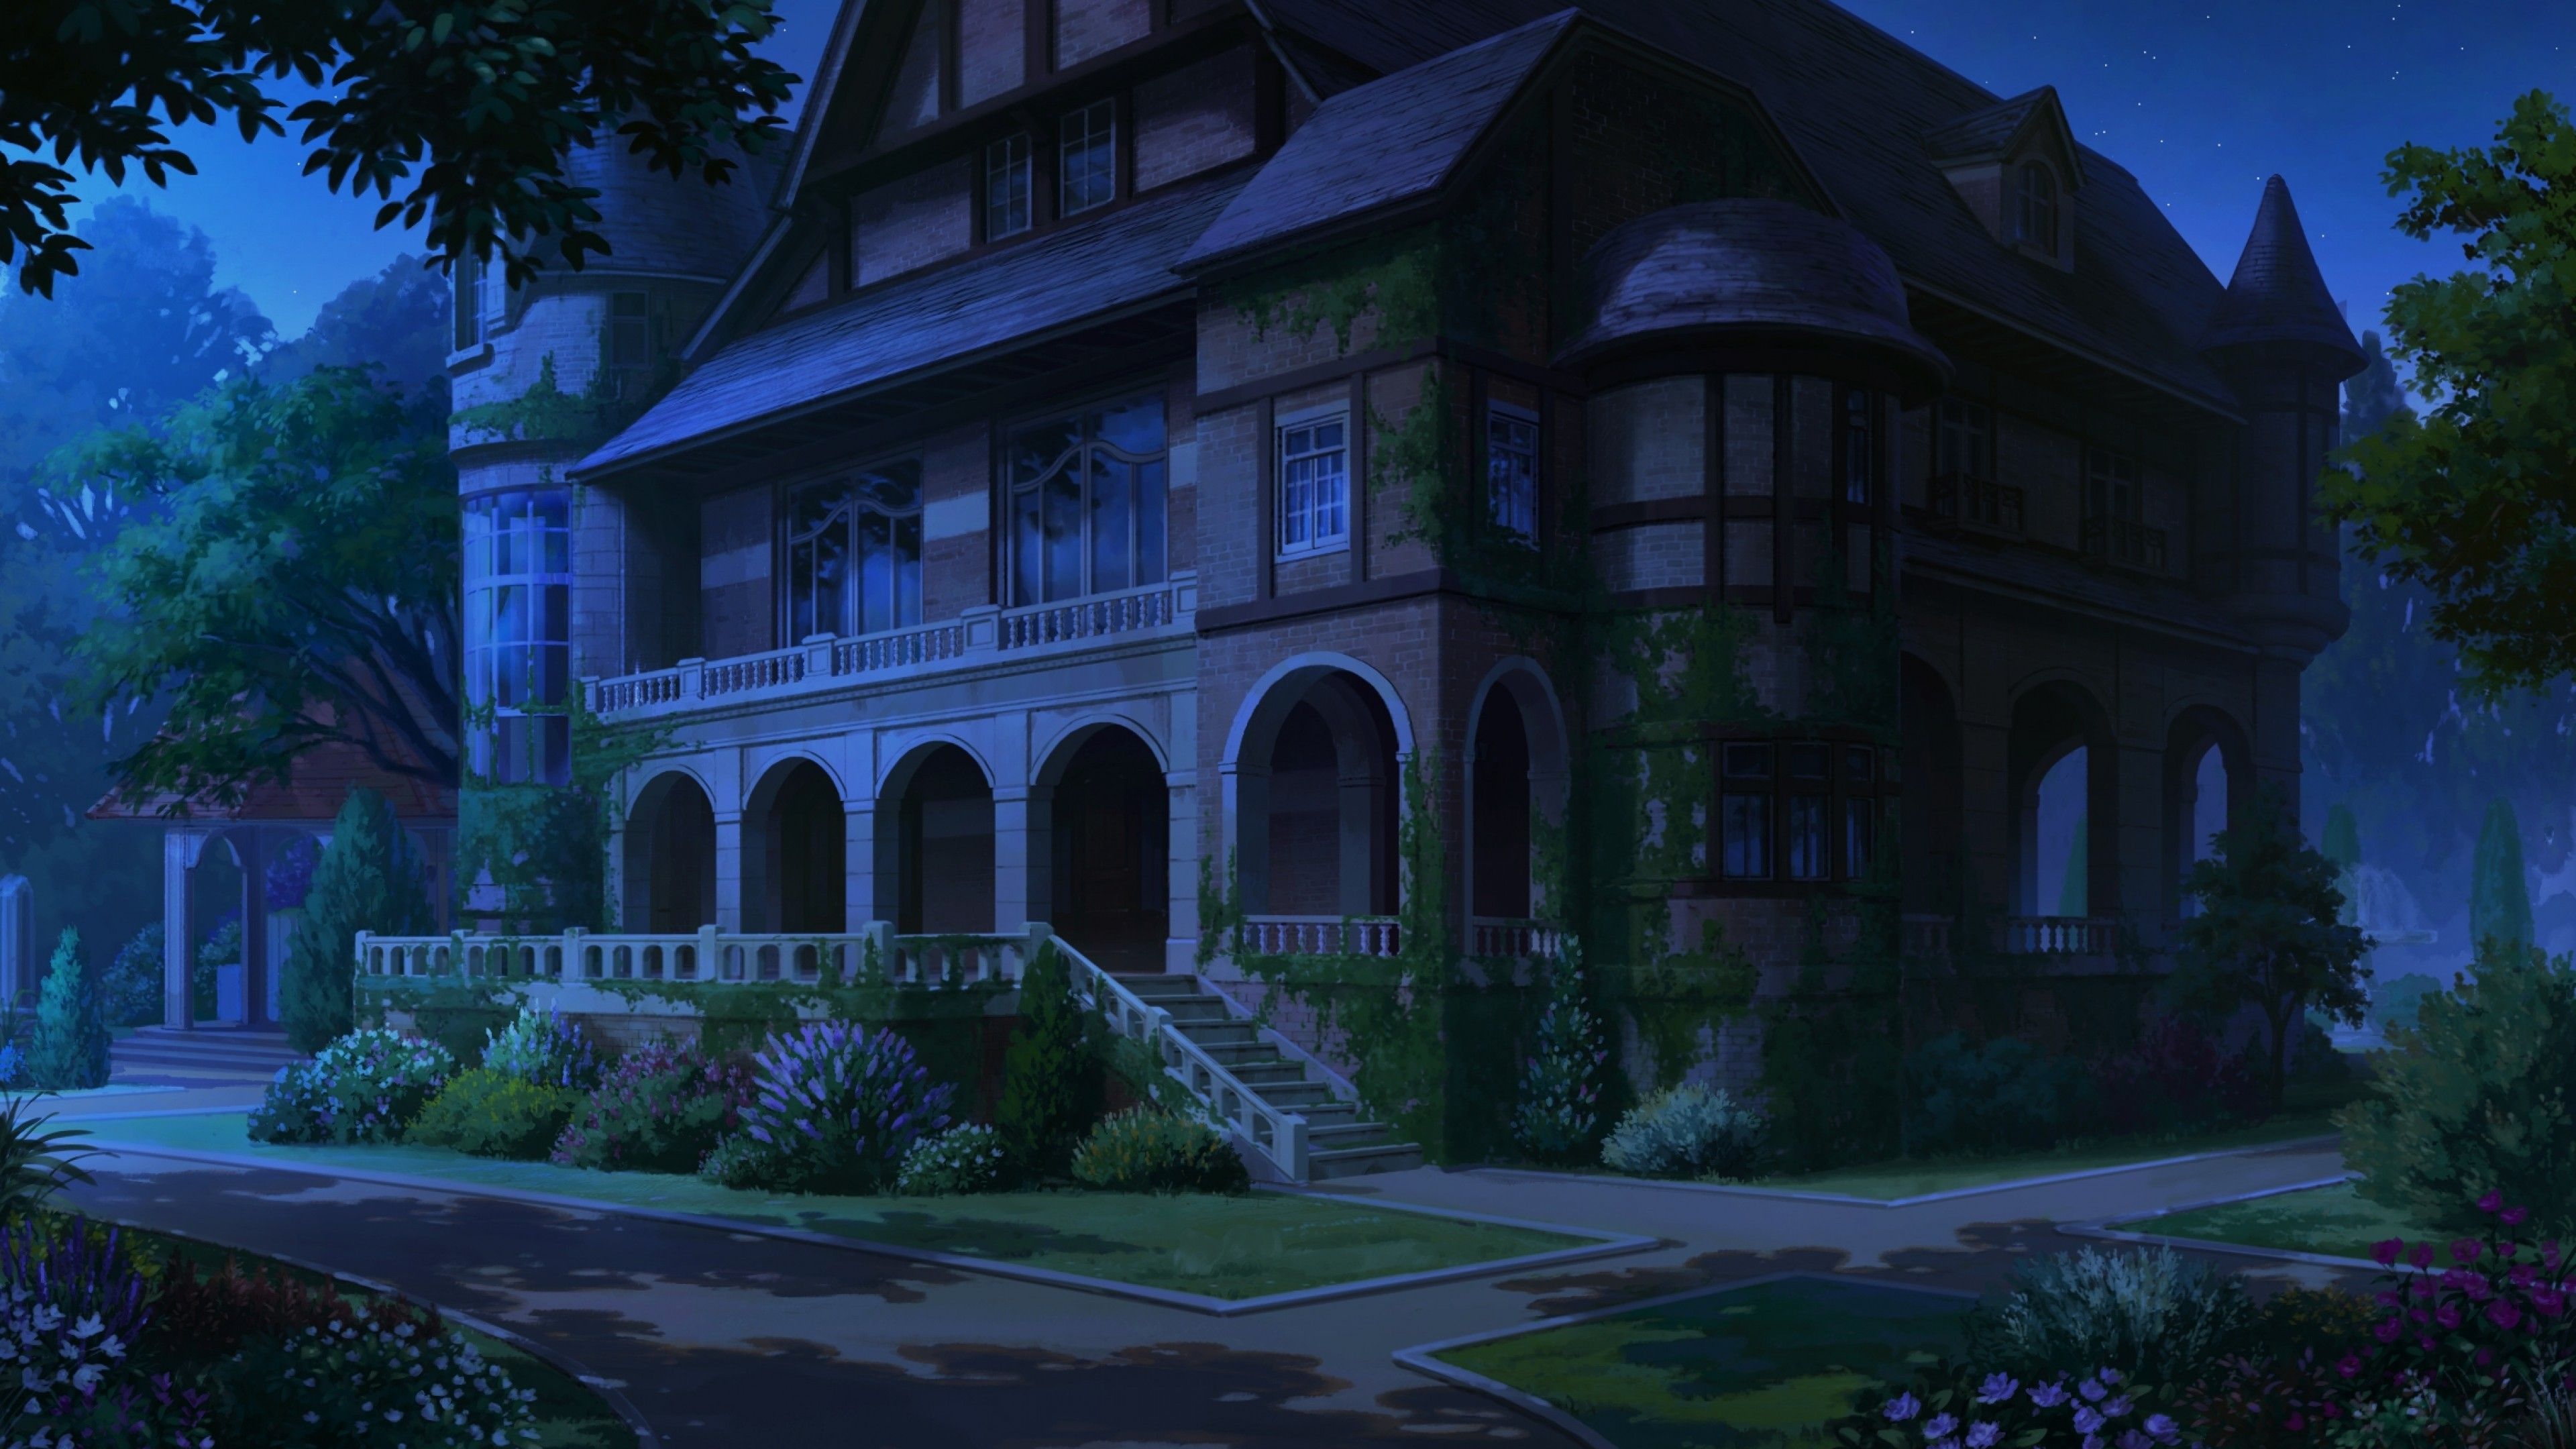 Hình nền Anime Mansion sẽ cho bạn một cảm giác sang trọng và đẳng cấp như một bang chủ trong thế giới anime. Hãy lên đường tới căn biệt thự đầy giàu có của các nhân vật Anime yêu thích của bạn với những bức ảnh đẹp tuyệt vời này.